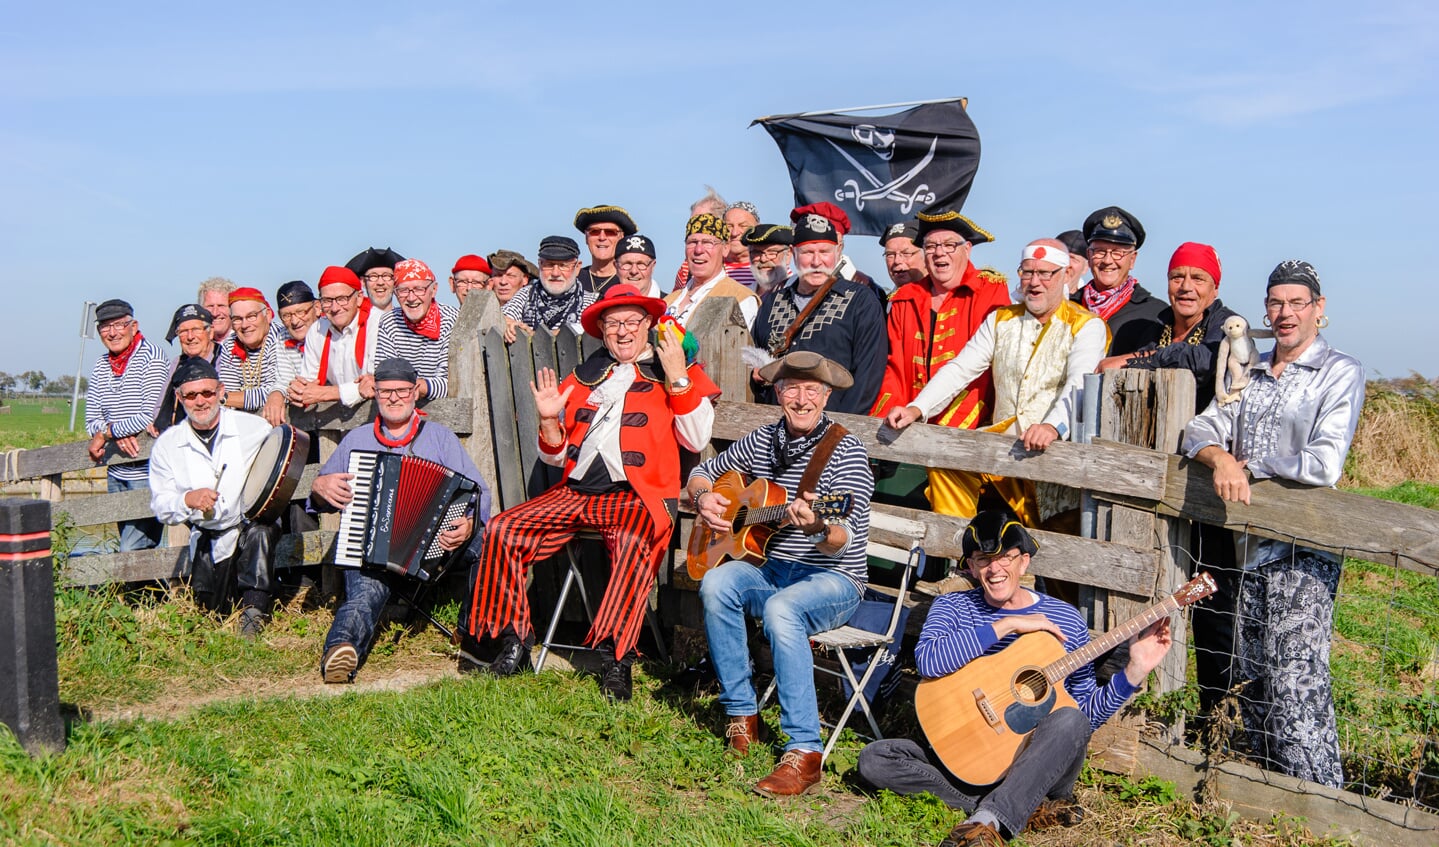 Piratenkoor De Landlubbers heeft een hoog feestgehalte. Dat laten de leden tijdens het Bevrijdingsfestival zien.